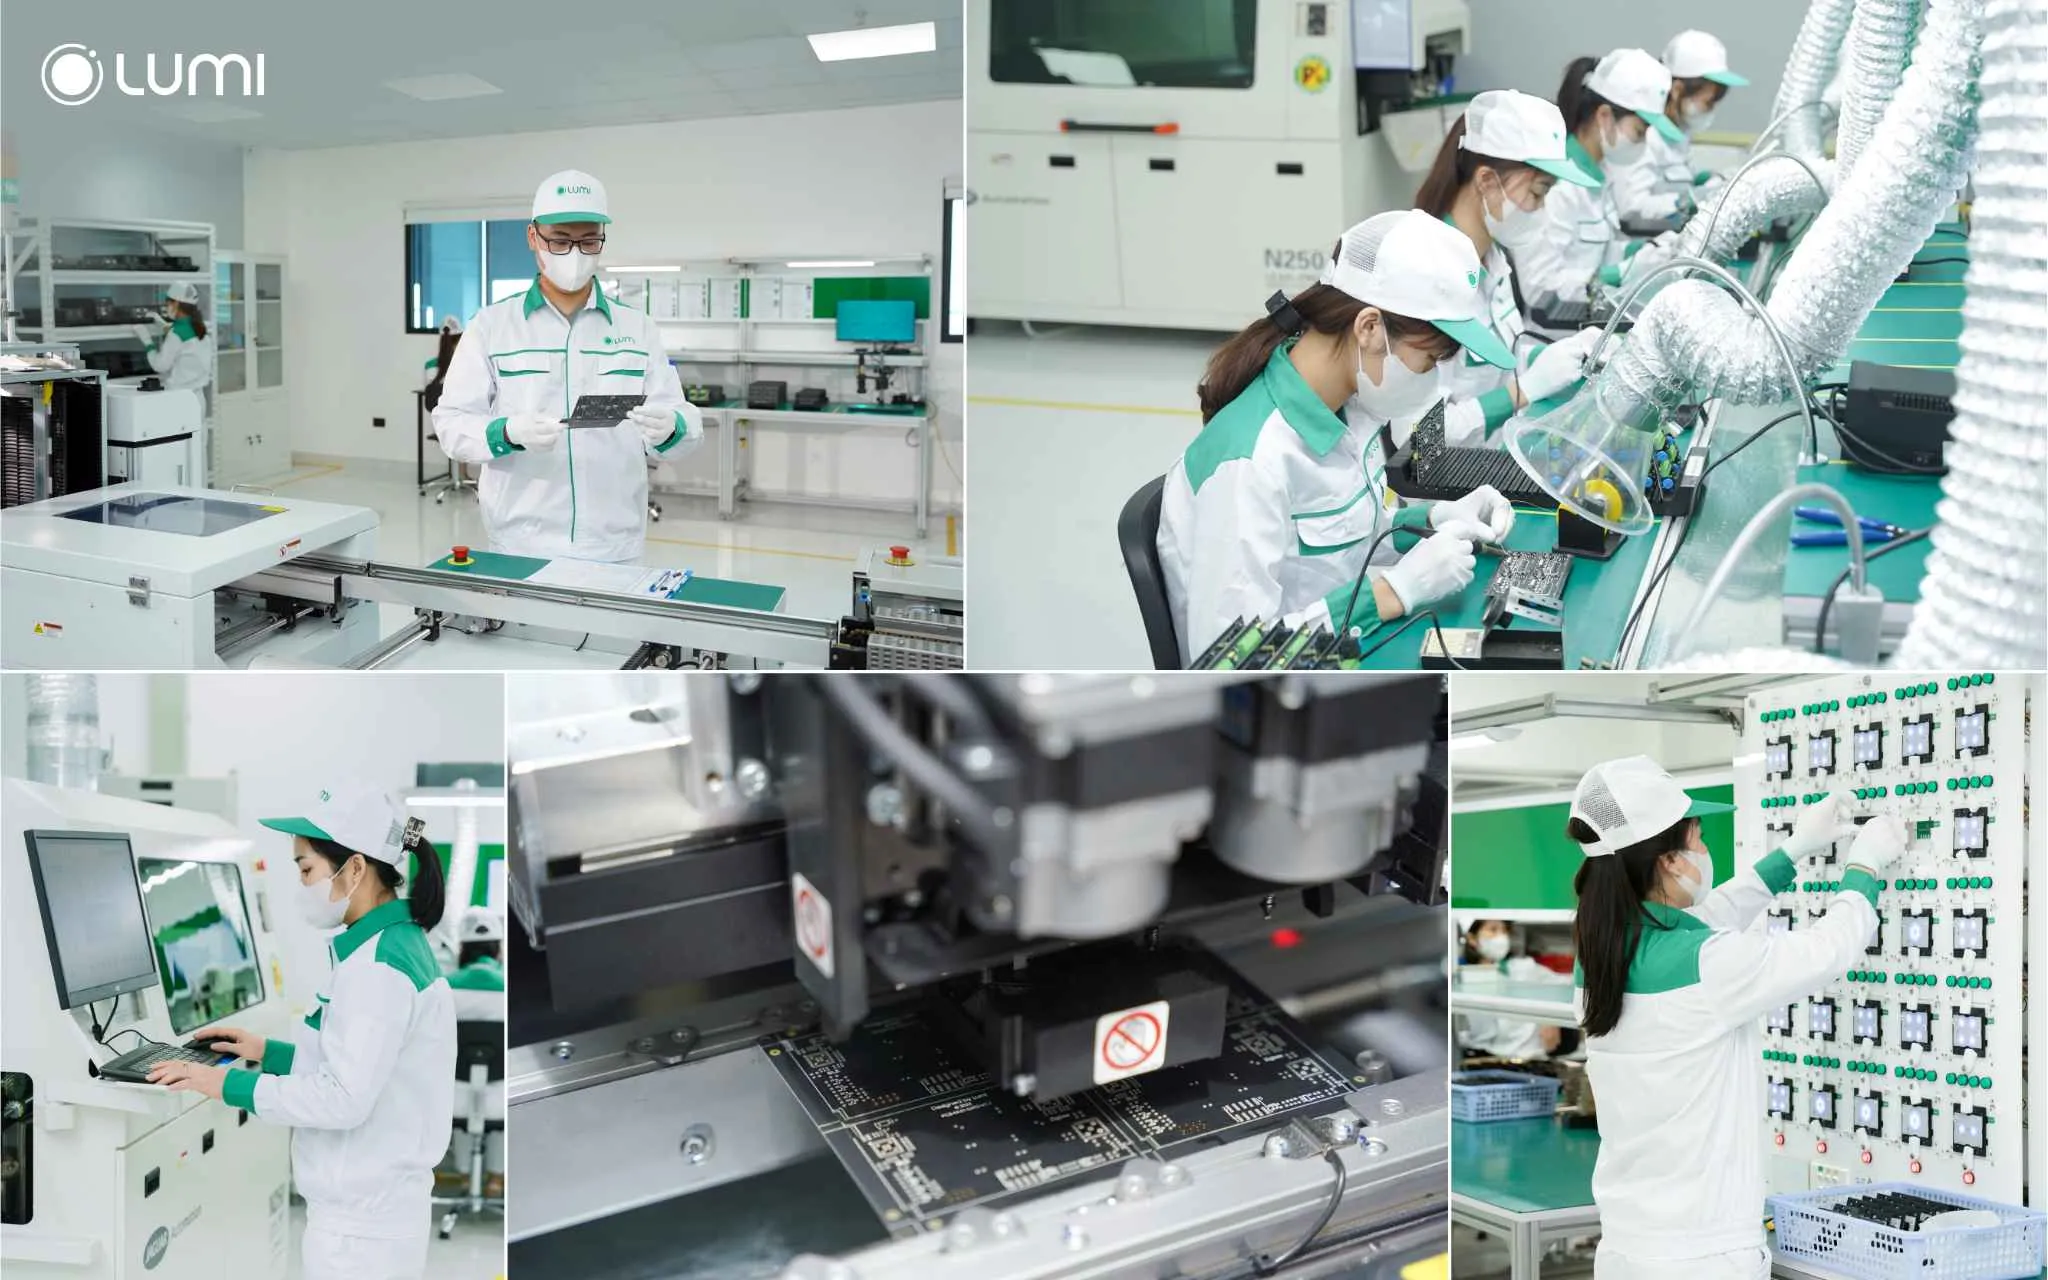 Dây chuyền sản xuất tại Lumi Smart Factory được đầu tư máy móc, trang thiết bị hiện đại, tiên tiến bậc nhất